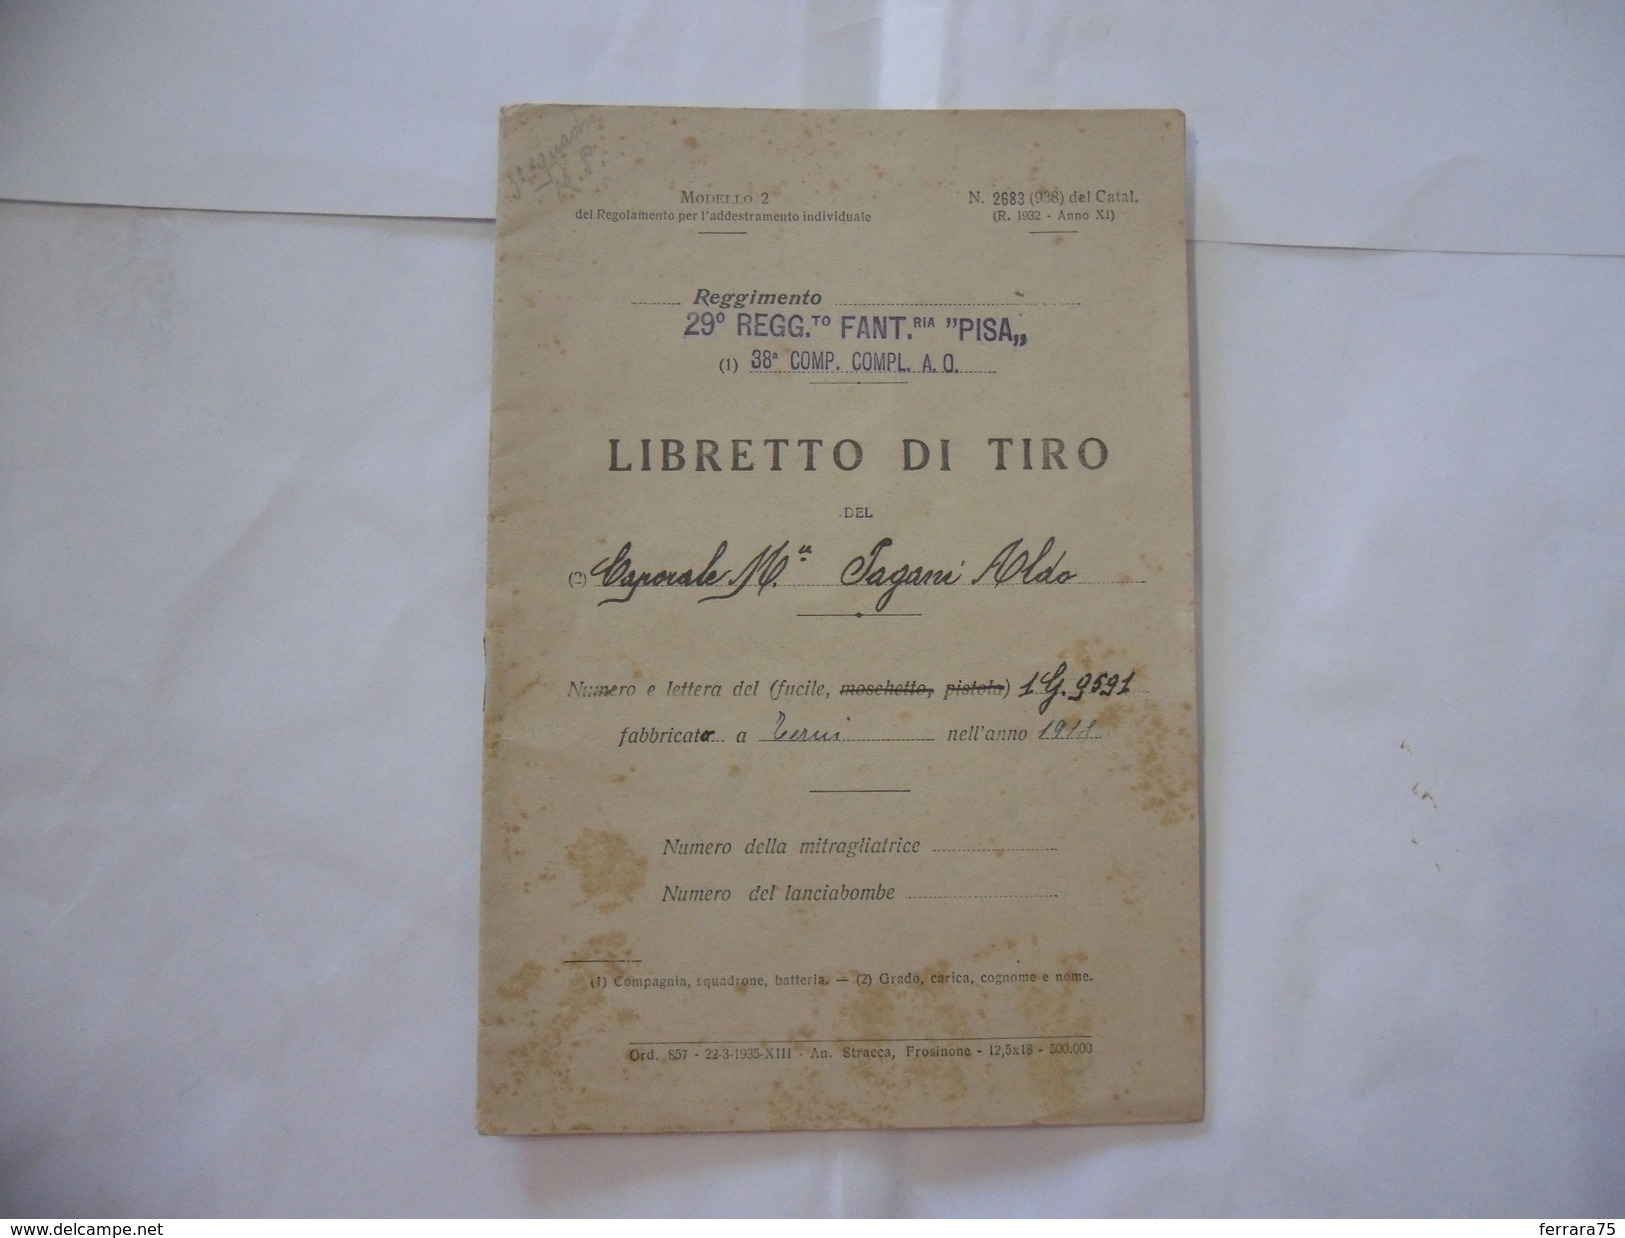 WW2 LIBRETTO DI TIRO 29°REGGIMENTO FANTERIA PISA FRONTE DEL PIAVE A.O. 1936. - Italian